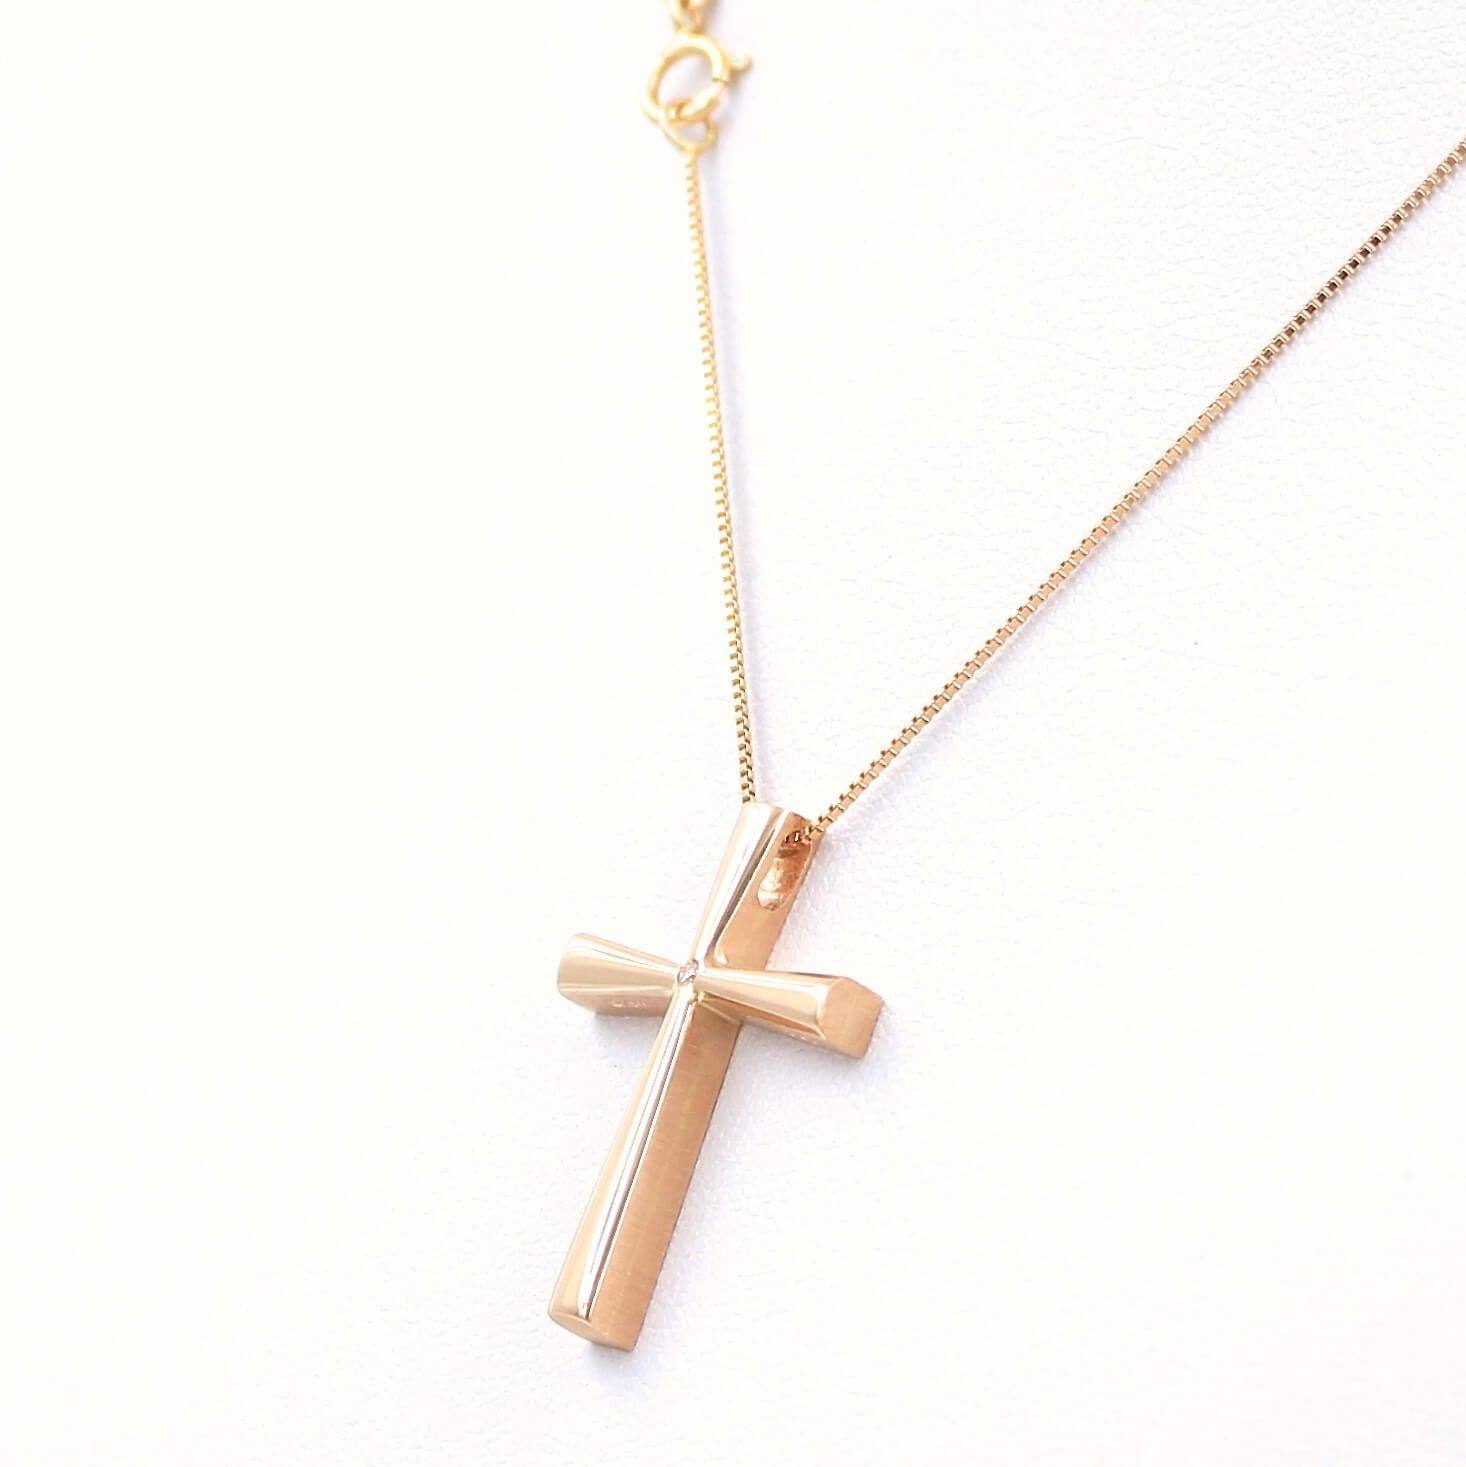 Βαπτιστικός σταυρός Τριάντος, από ροζ χρυσό 14 καρατίων για κορίτσι